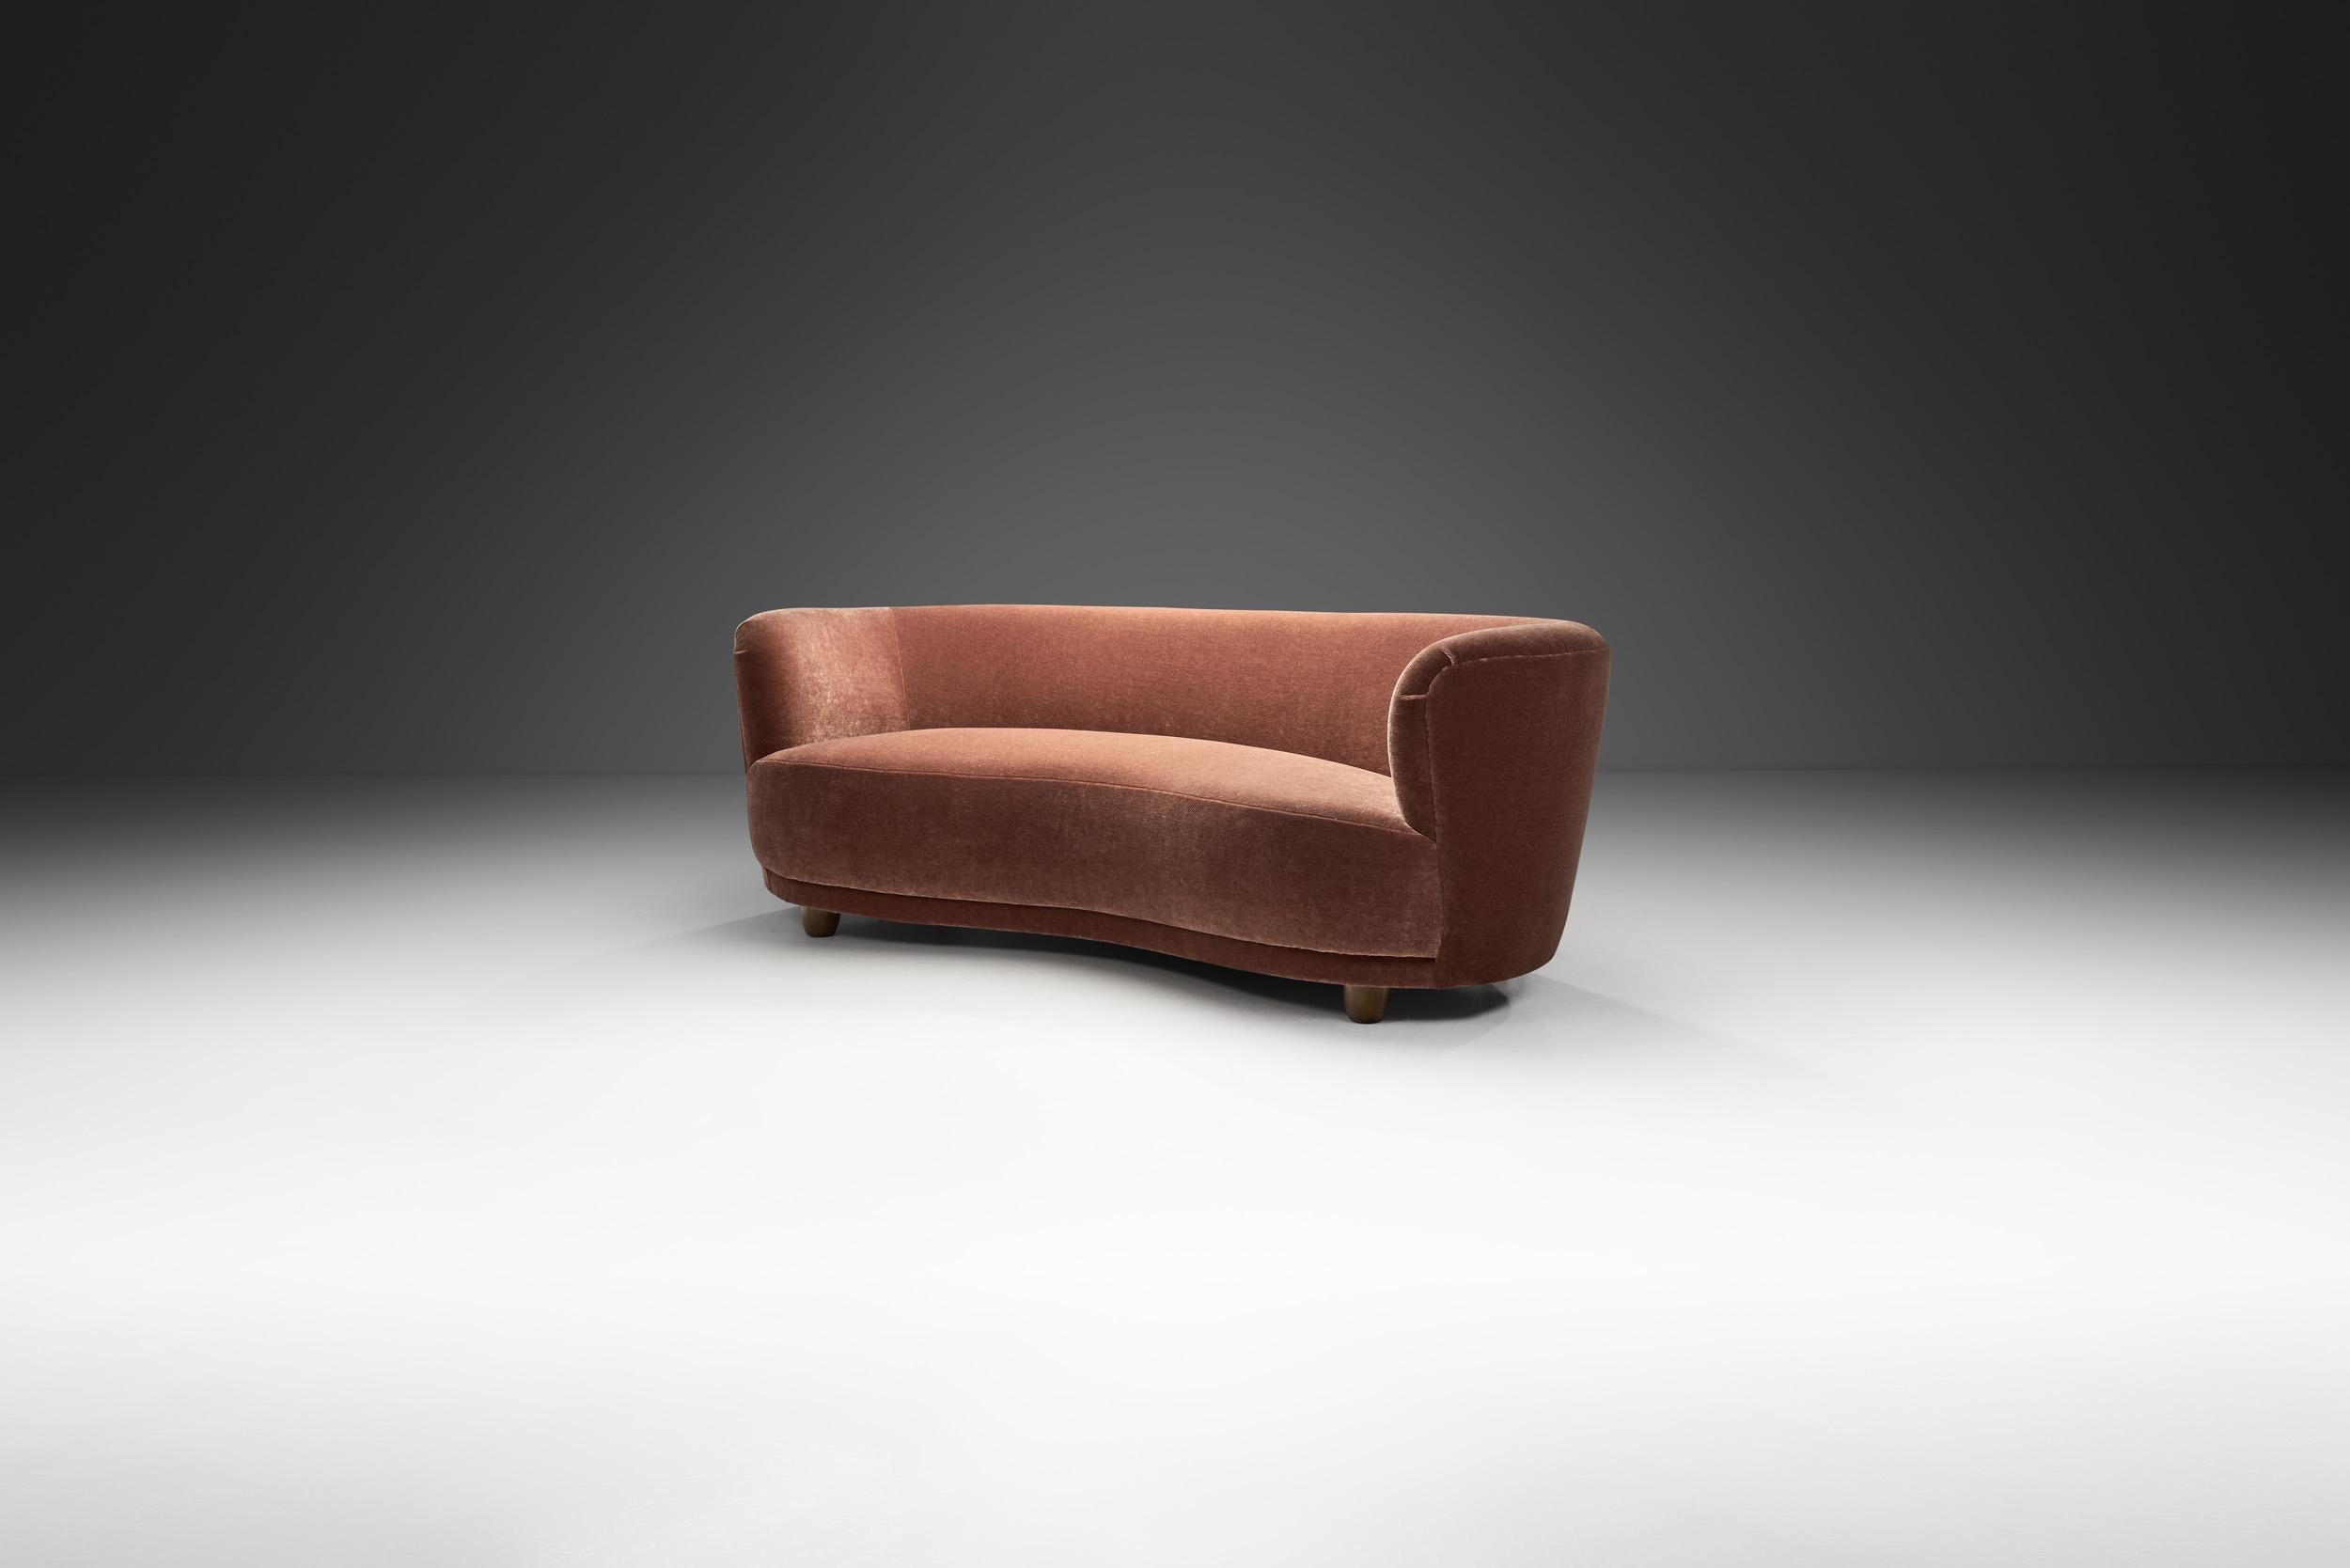 Dieses schöne dänische Dreisitzer-Sofa erinnert an den Art-Déco-Stil der 1930er Jahre mit dem erkennbaren Touch des dänischen Modernismus. Dank seiner elegant geschwungenen Form wird dieser Sofatyp oft als 